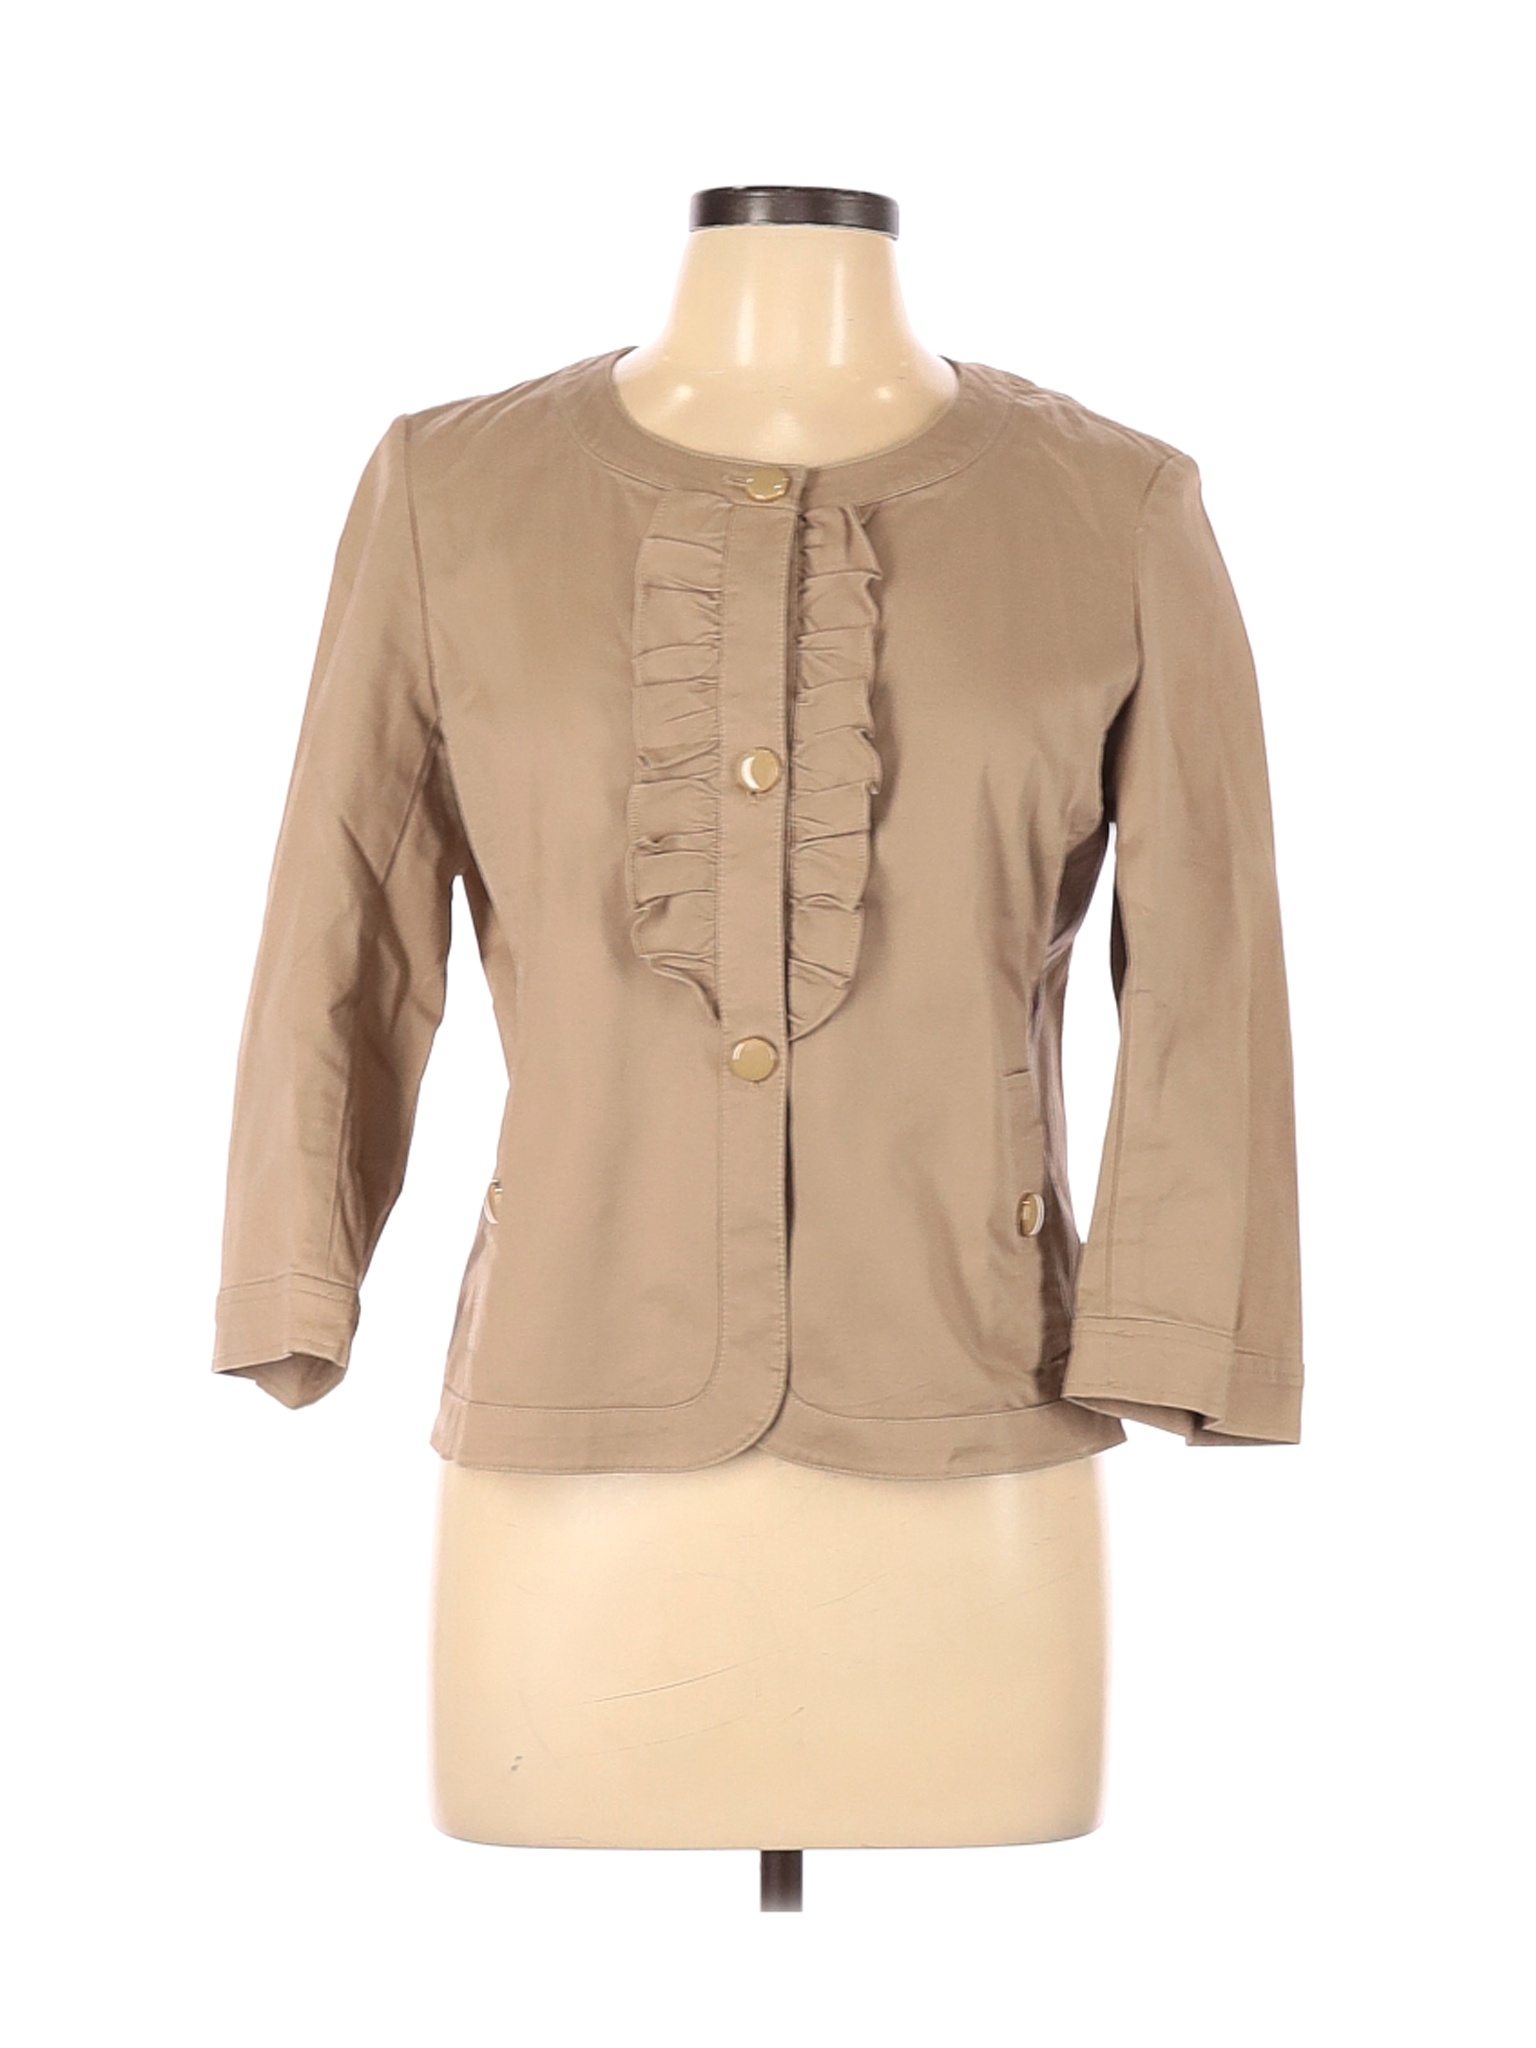 Talbots Women Brown Jacket 10 Petites | eBay